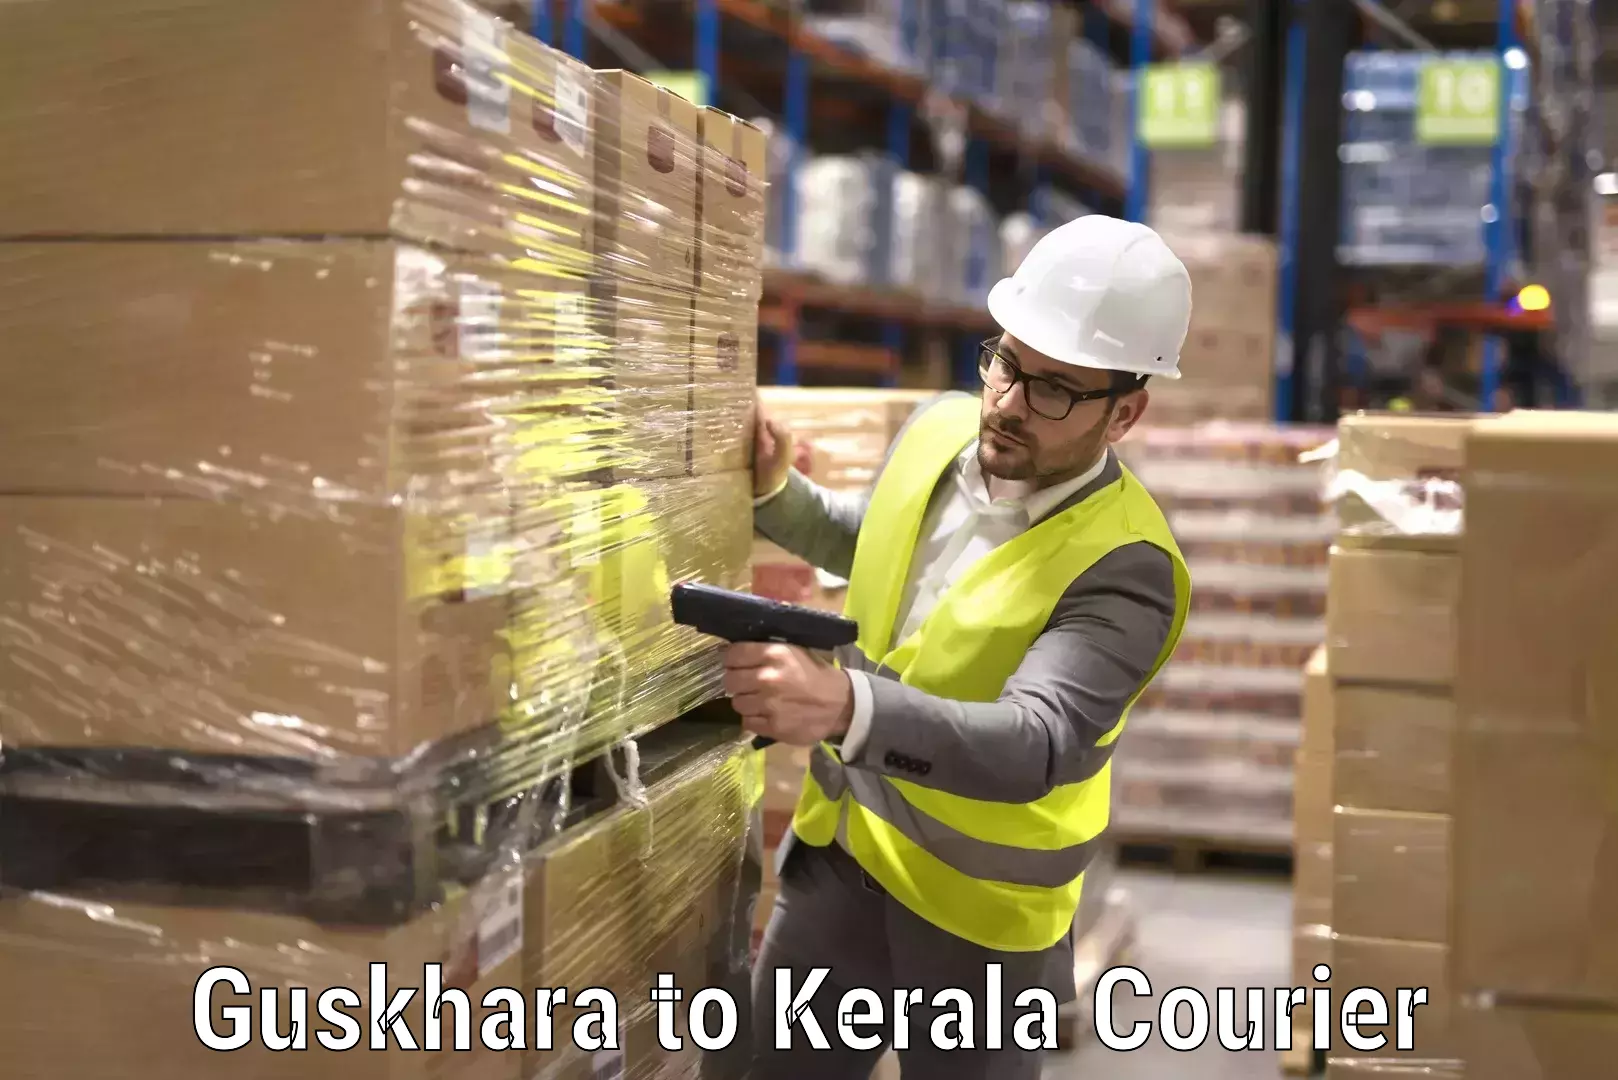 Professional home movers Guskhara to Kerala